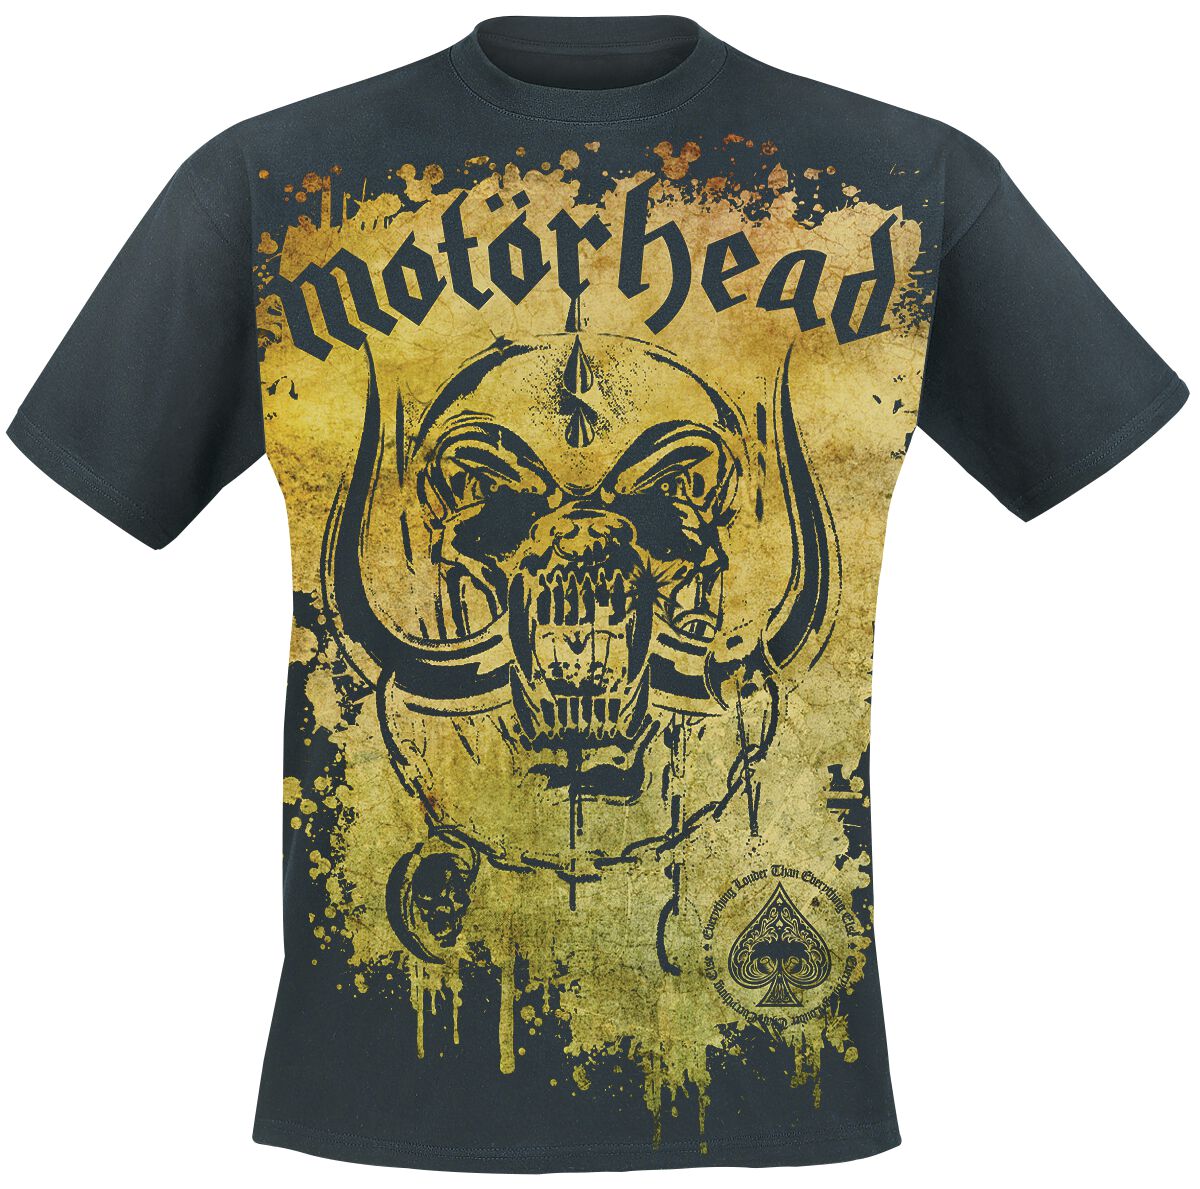 Motörhead T-Shirt - Acid Splatter - M bis 3XL - für Männer - Größe XXL - schwarz  - Lizenziertes Merchandise!